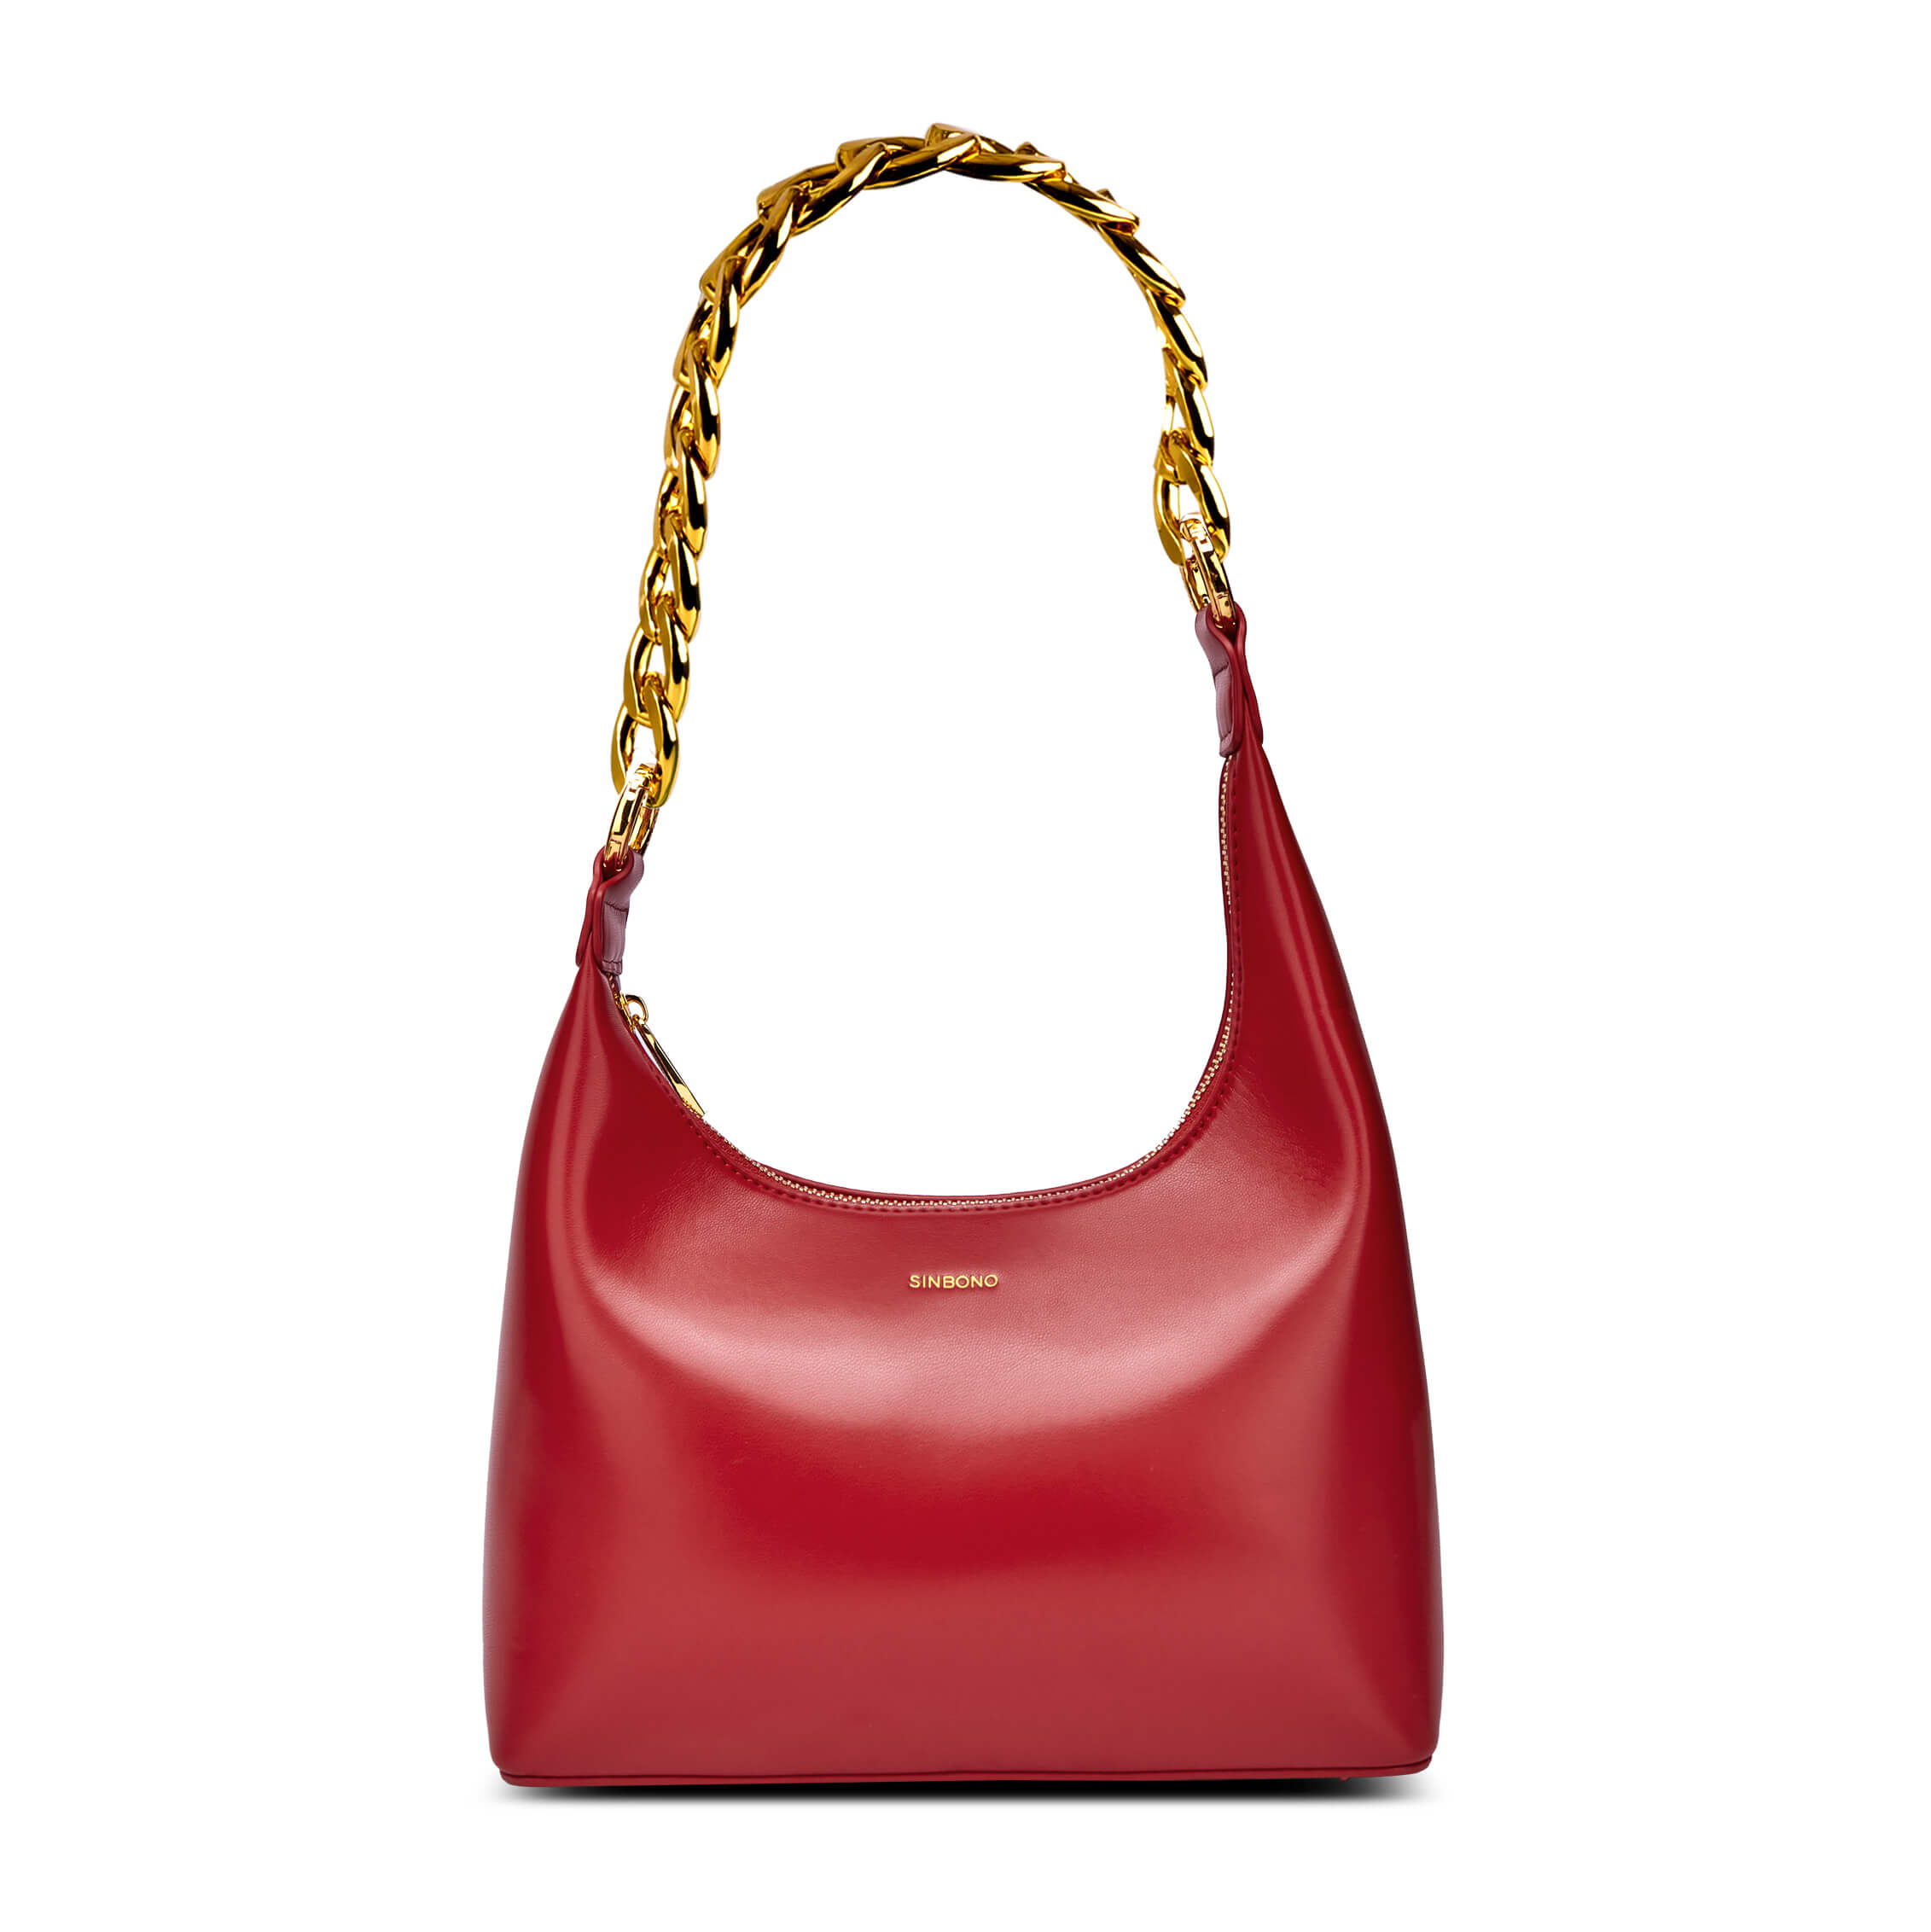 SINBONO Vienna Women Vegan Top Handle Handbag Shoulder Bag Red